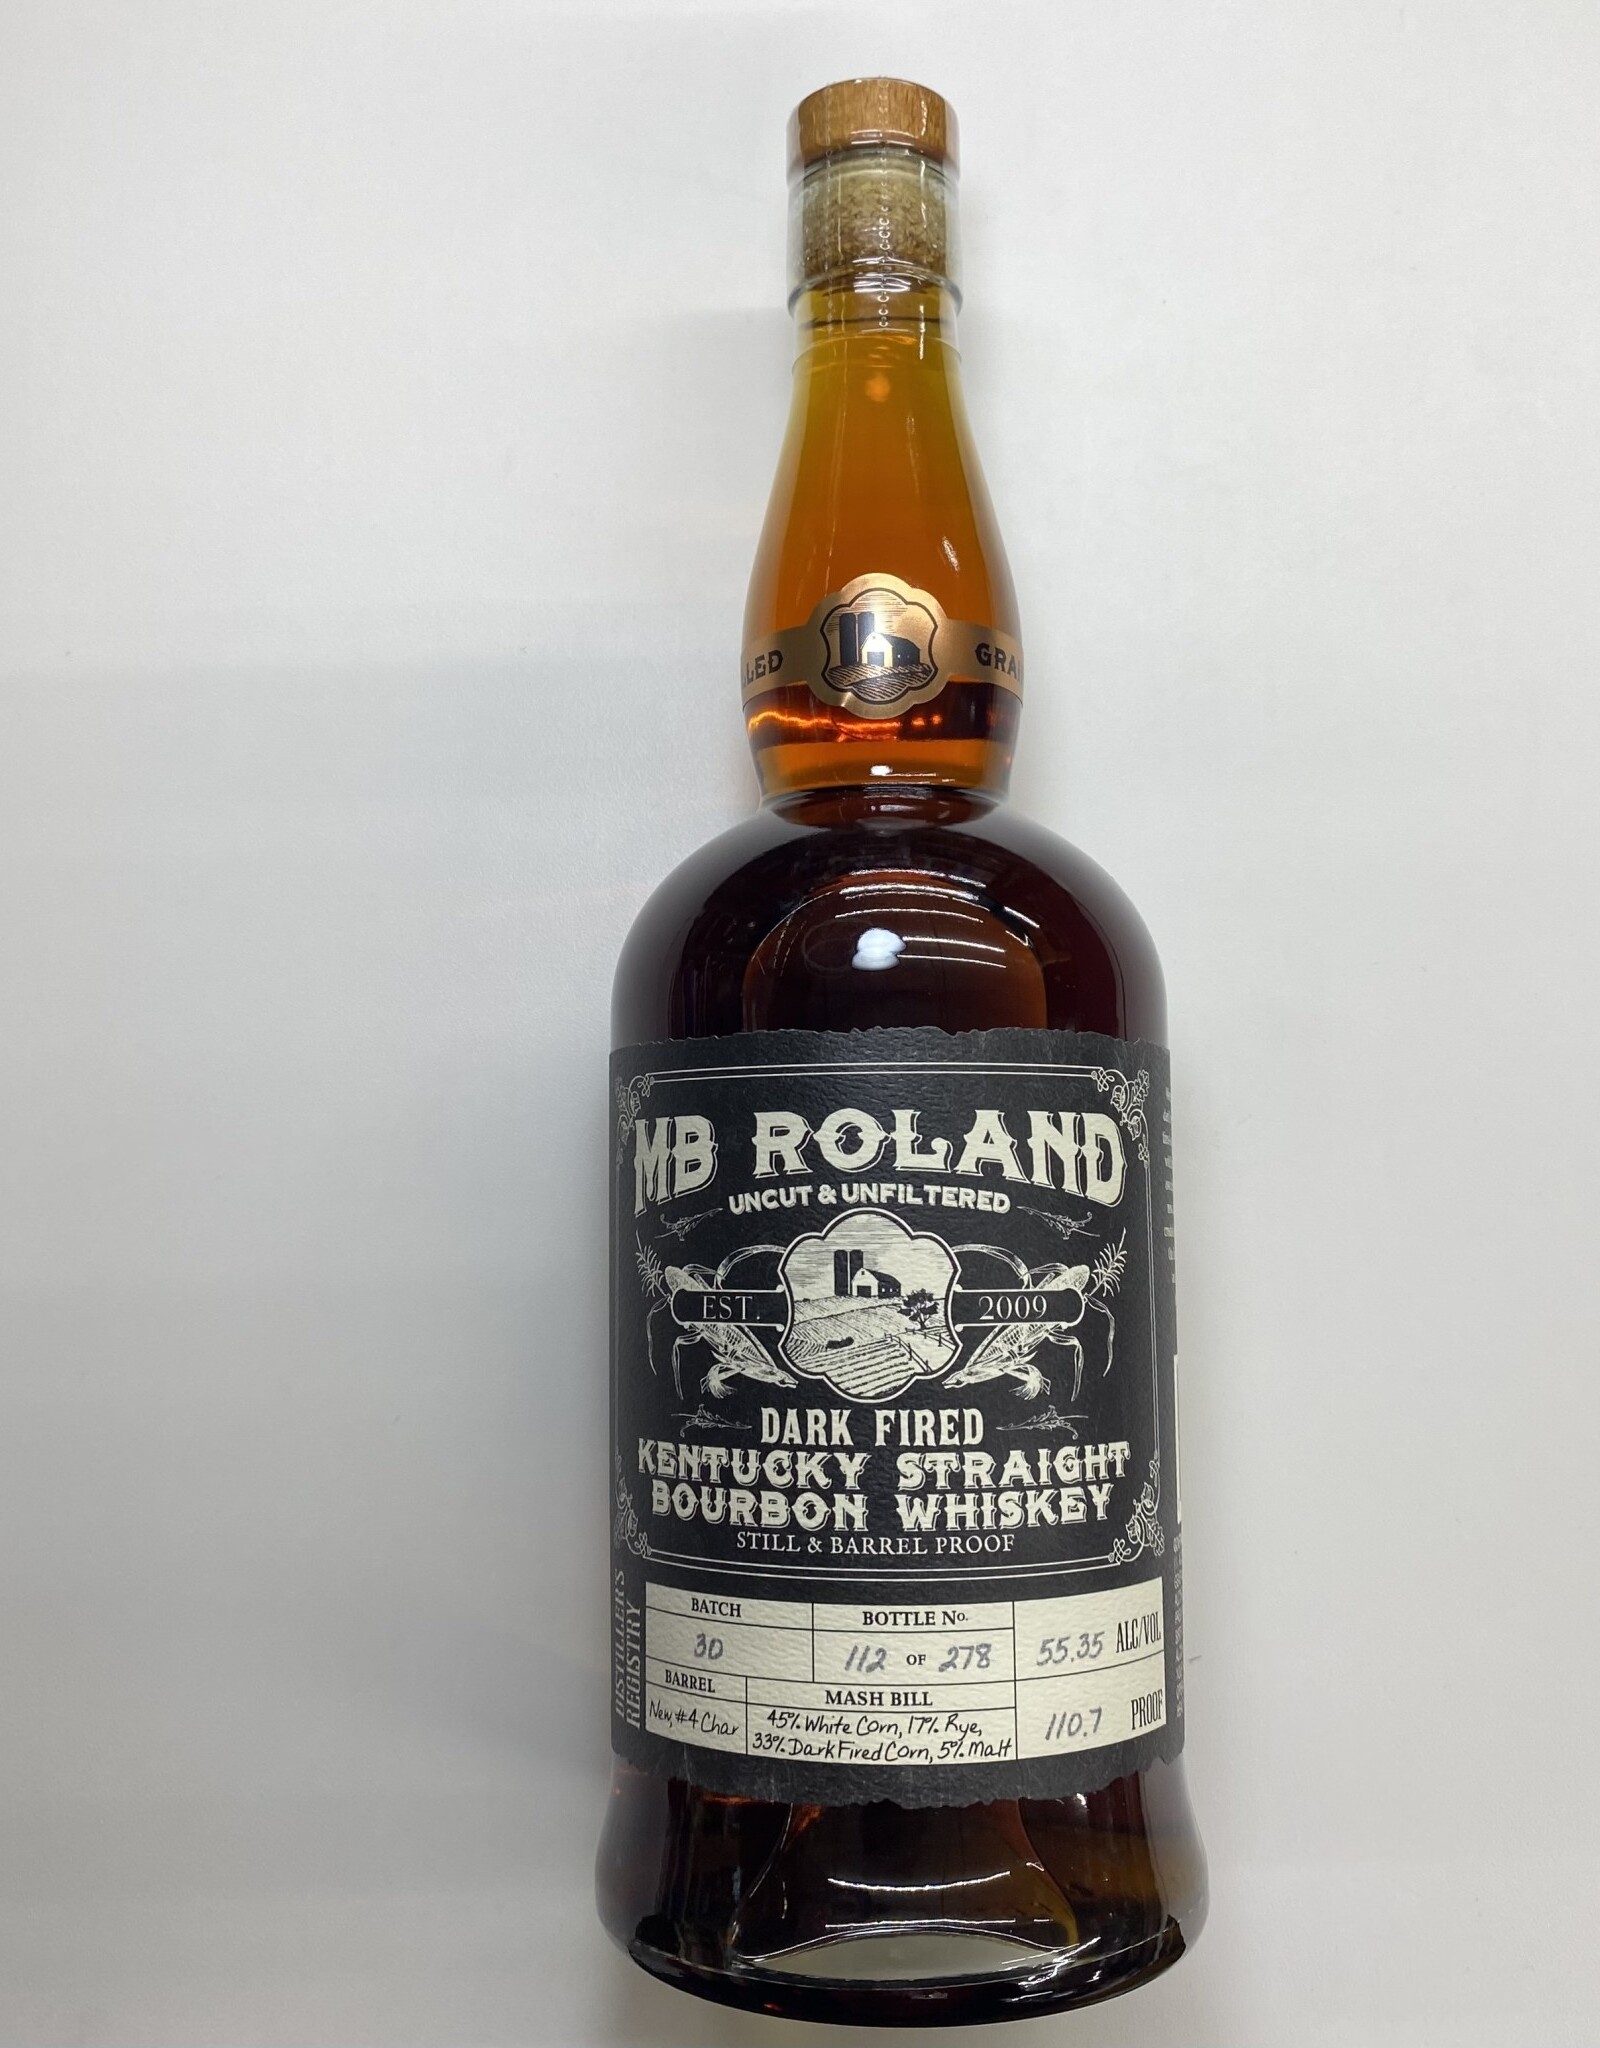 MB Roland MB Roland Dark Fired Kentucky Bourbon